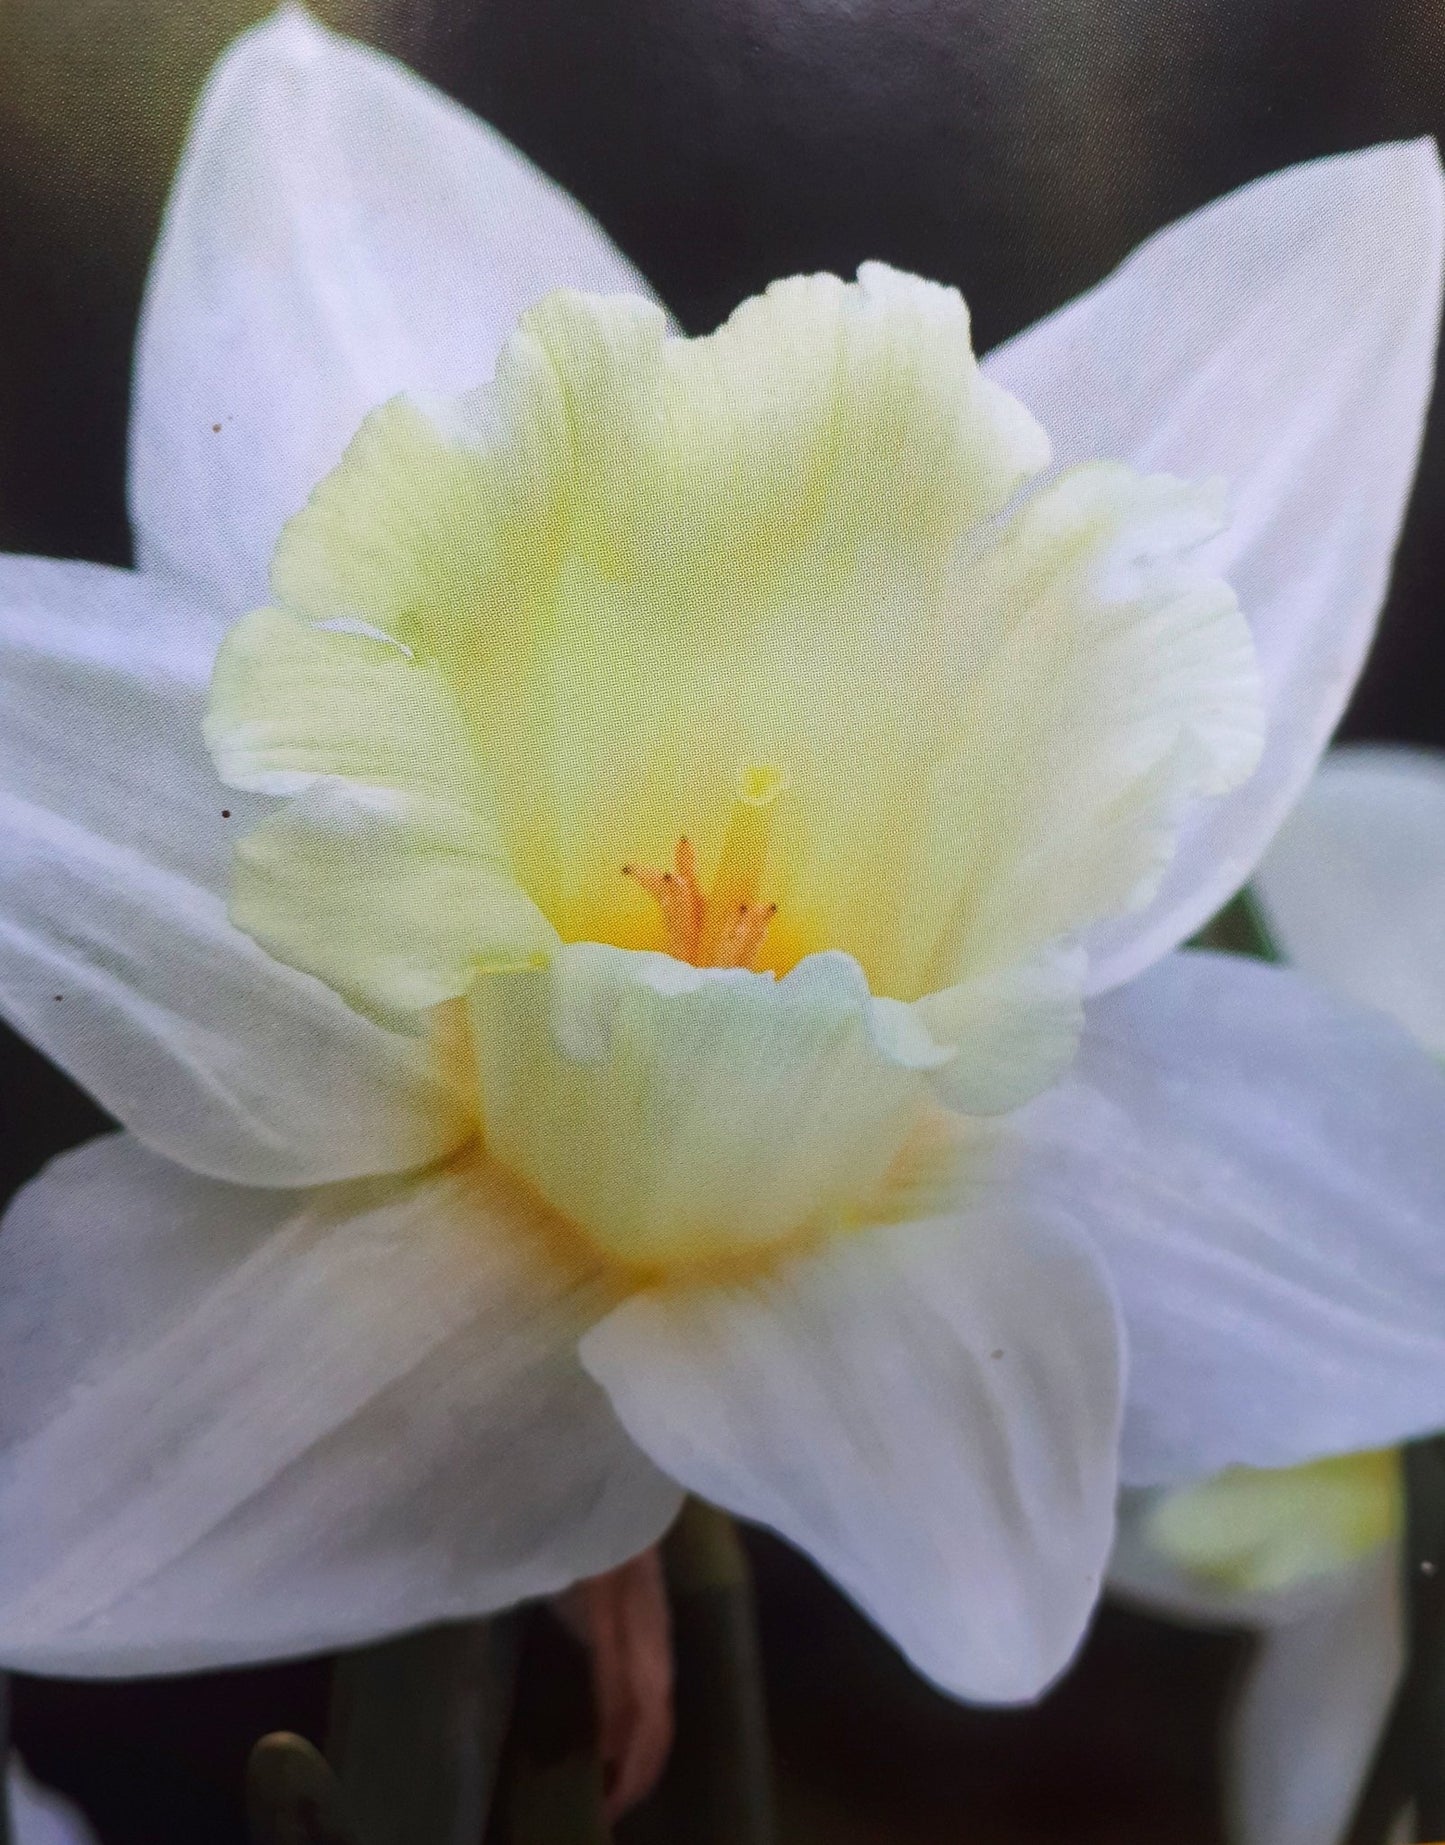 White Daffodil - Narcissus Ice Follies - The Irish Gardener Store